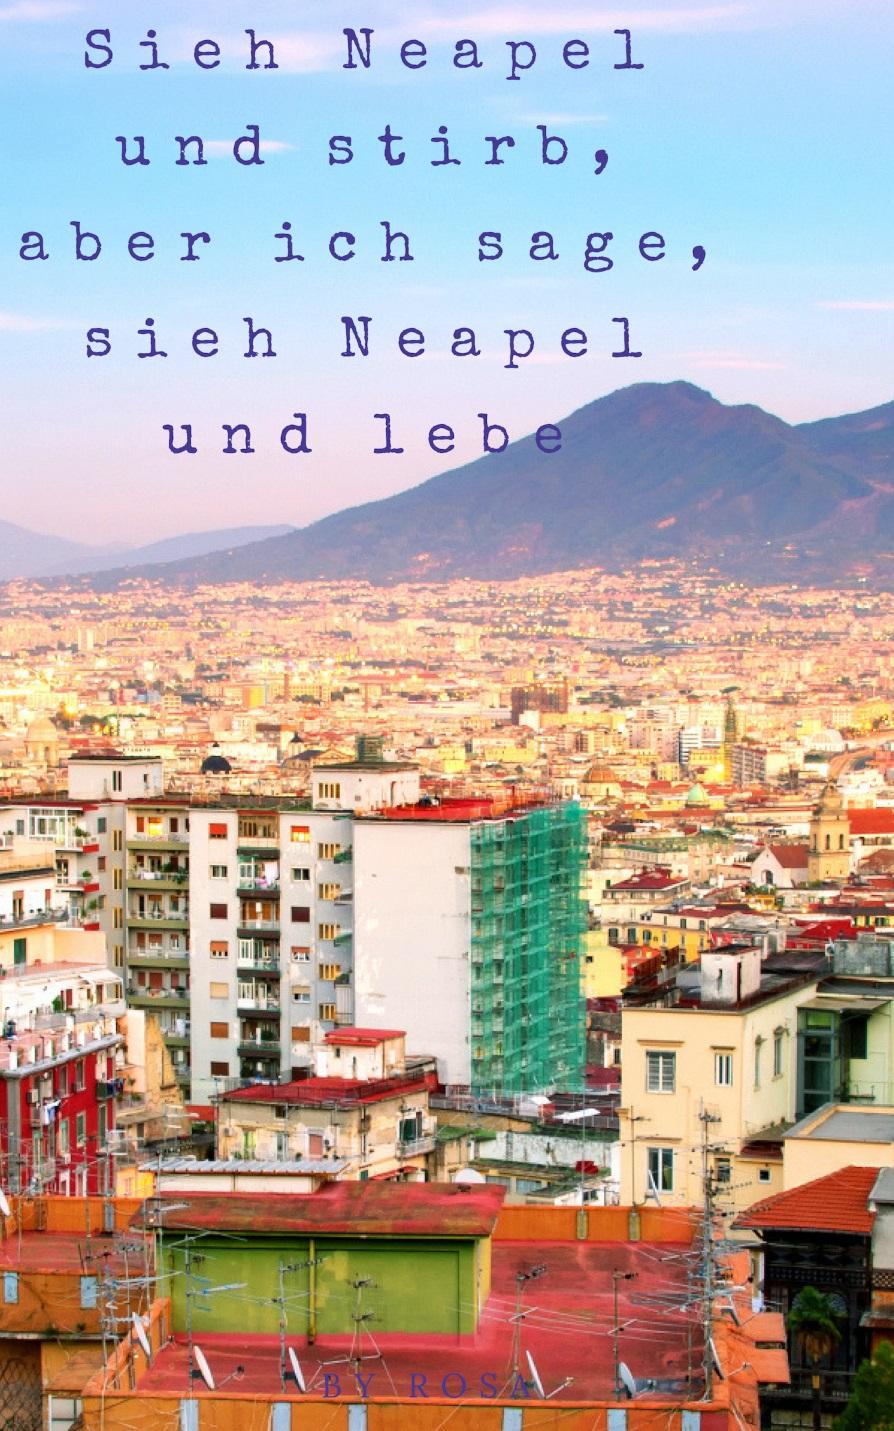 Name des Buches: Das Buch spricht folgende Sprachen: Rosa Italienisch Das Buch hat einiges zu erzählen über diese Themen: - Neapel - Die